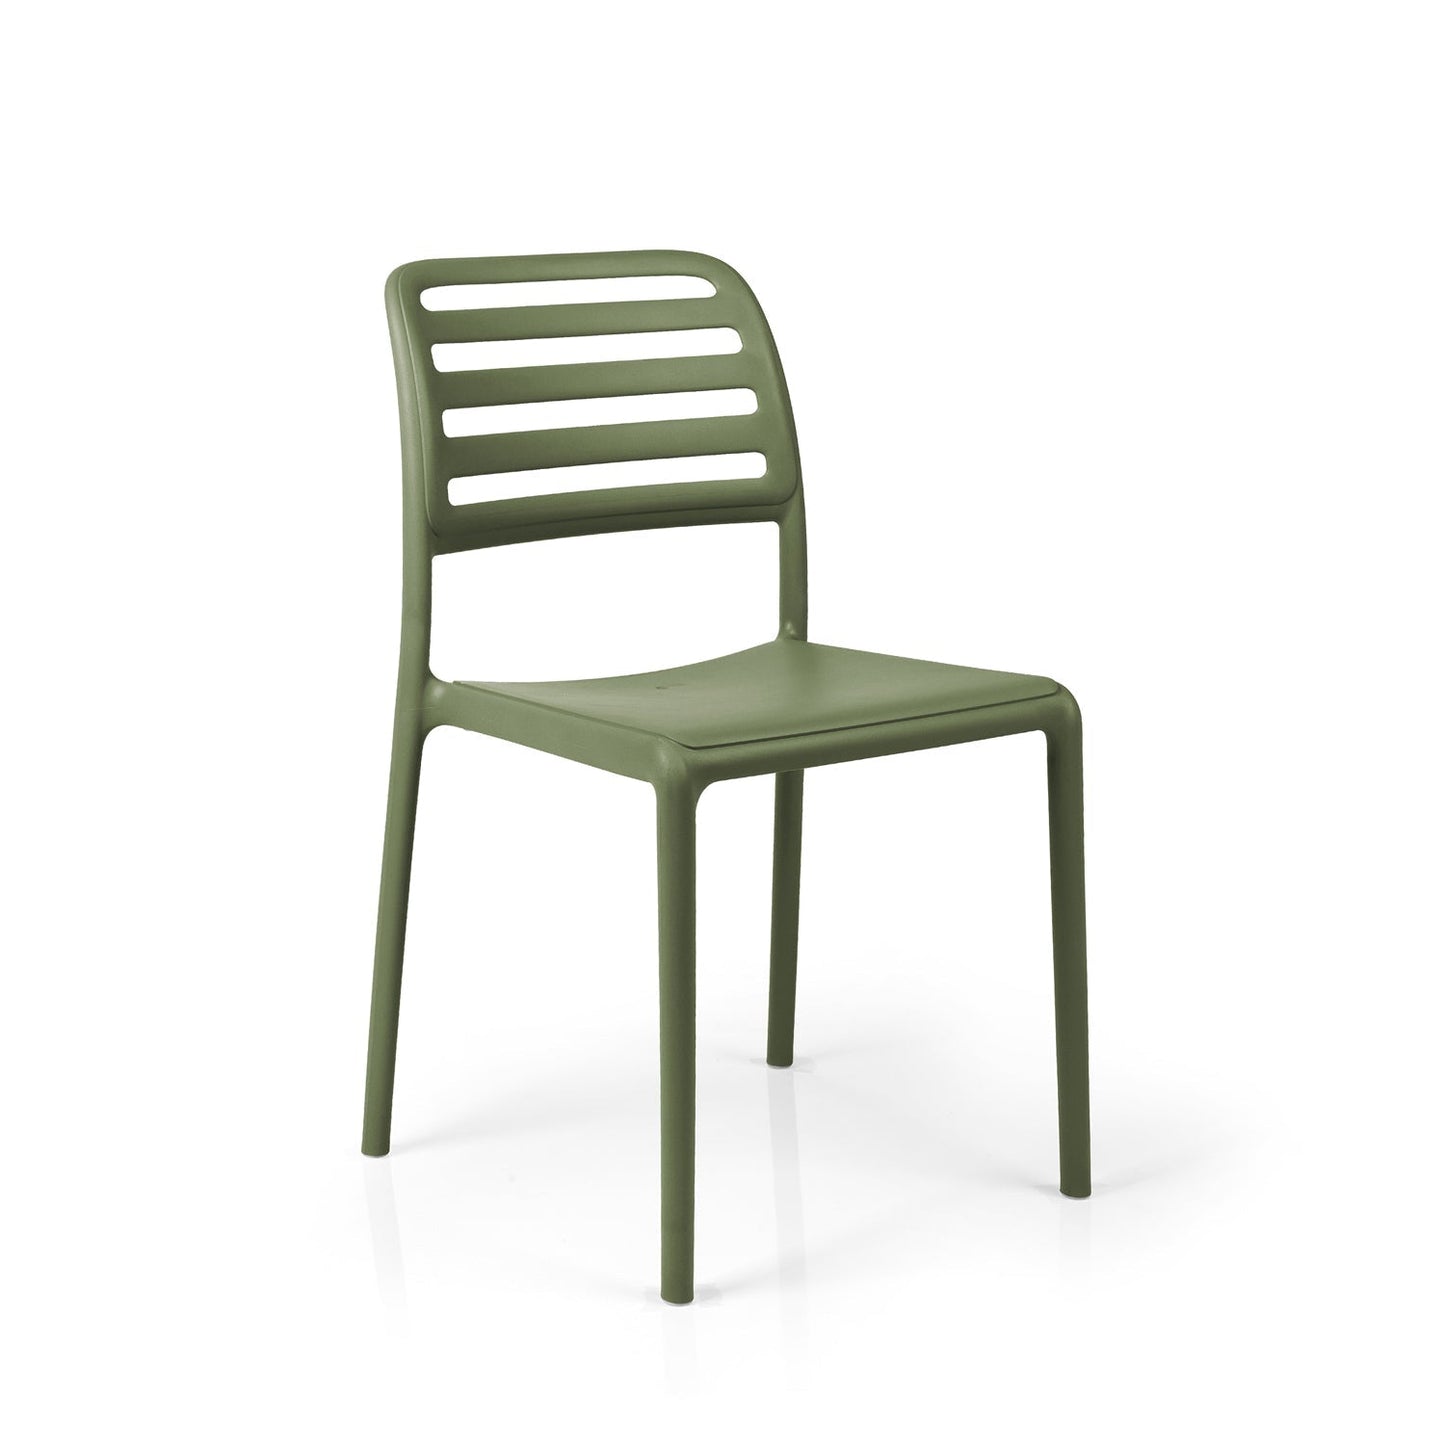 Costa Bistro Garden Chair By Nardi -  Olive